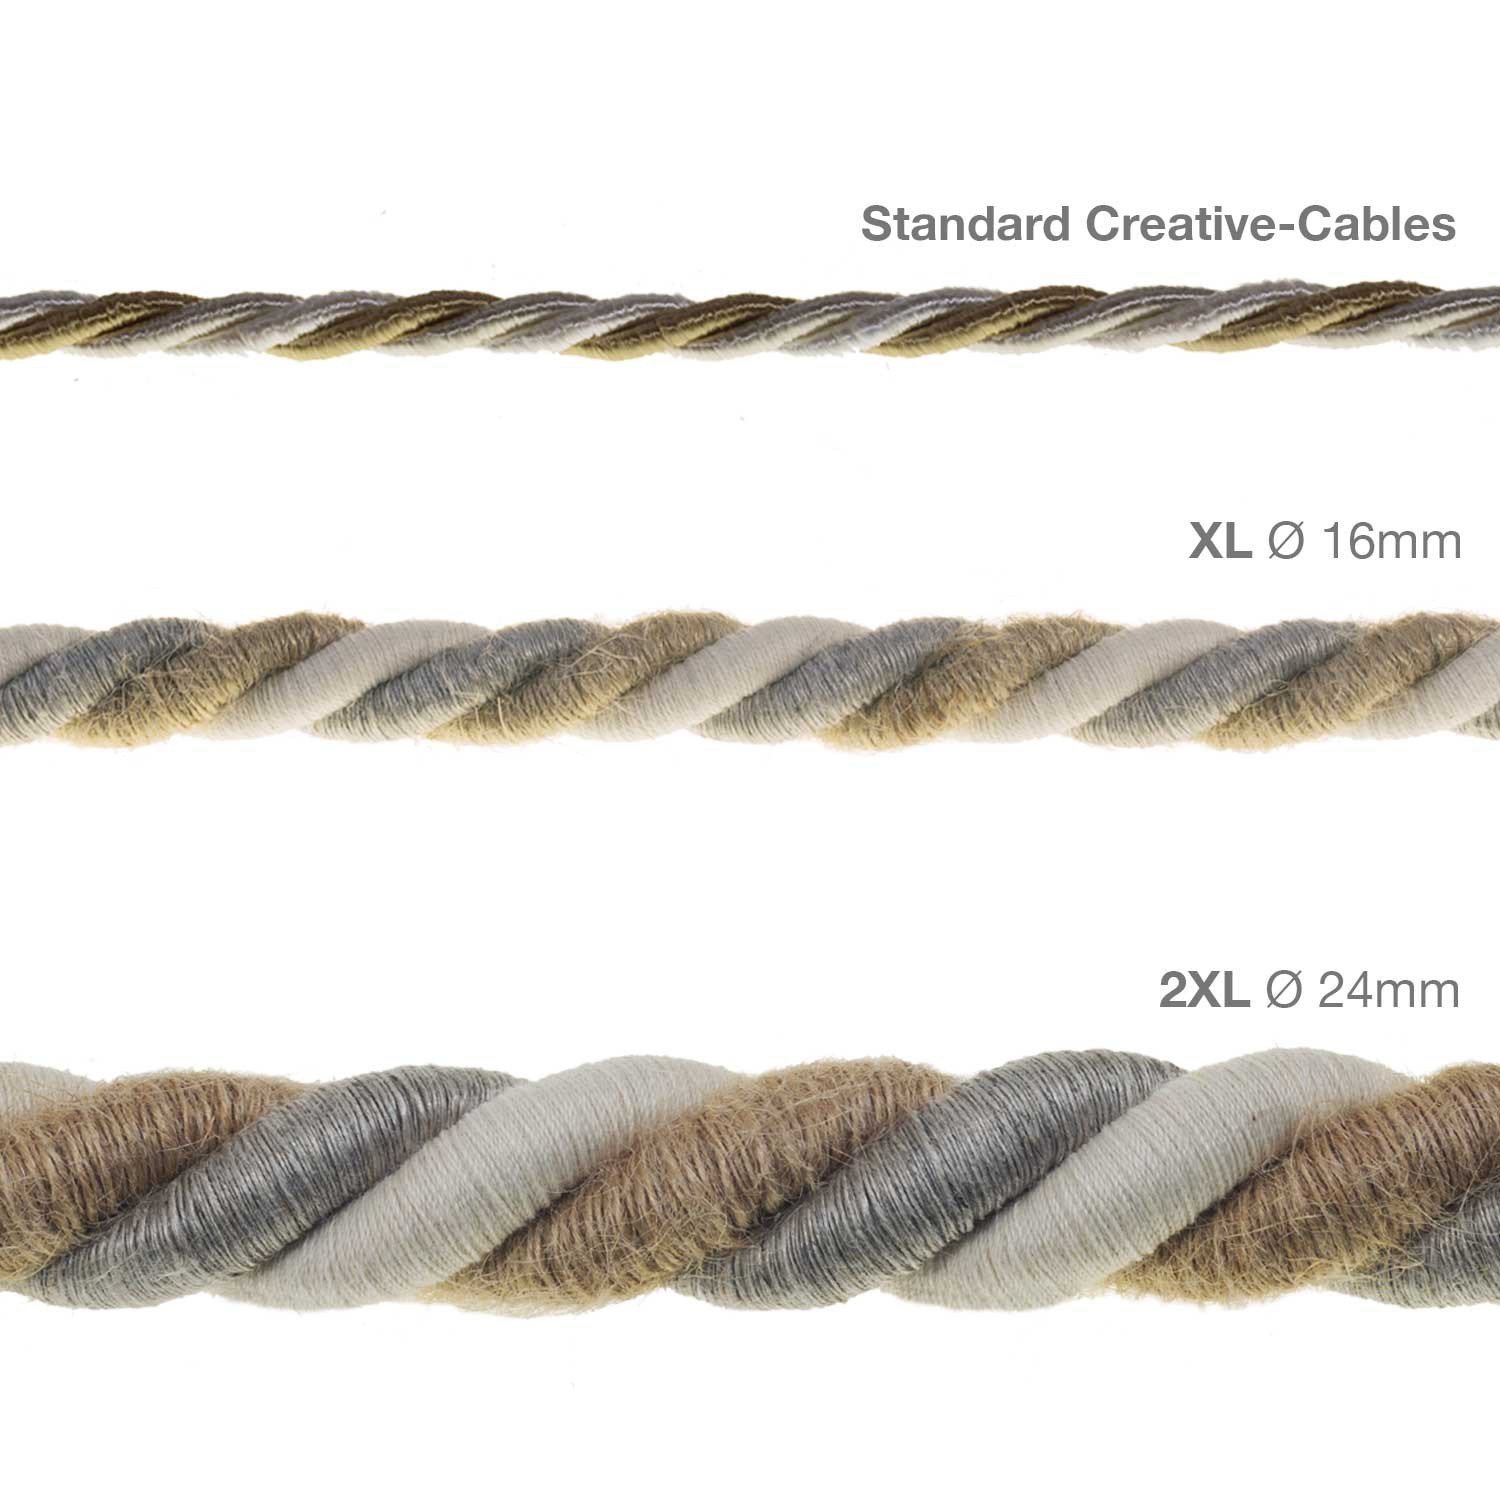 Cordon 2XL, cable eléctrico 3x0,75. Revestimiento de yute, algodón y lino Country. Diámetro: 24mm.